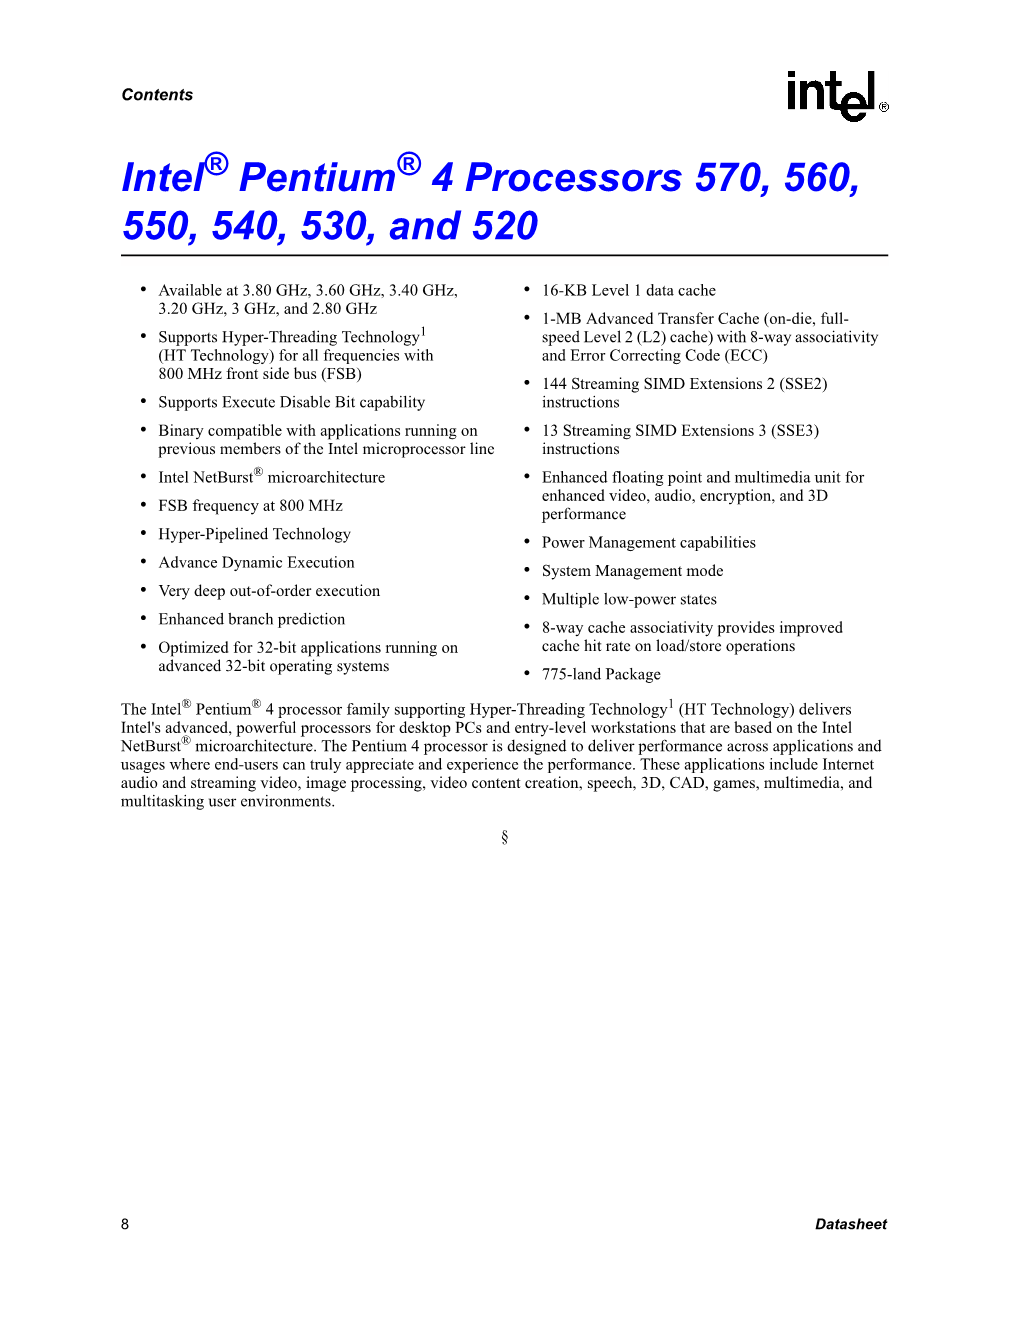 Intel(R) Pentium(R) 4 Processors